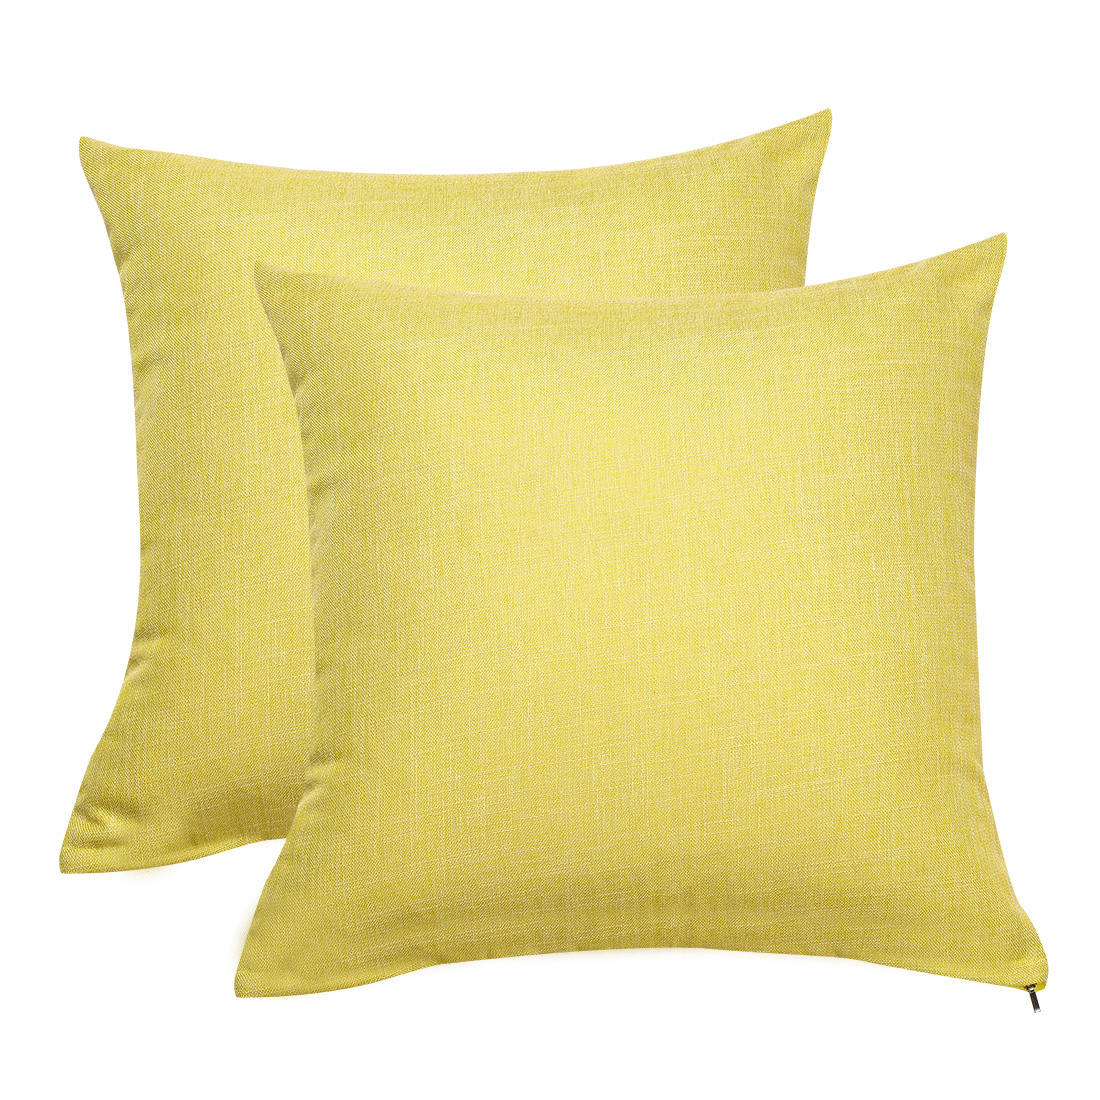 Unique Bargains 2pcs Decorative Cotton Linen Square Throw Pillow Cover Cases for Bed Yellow